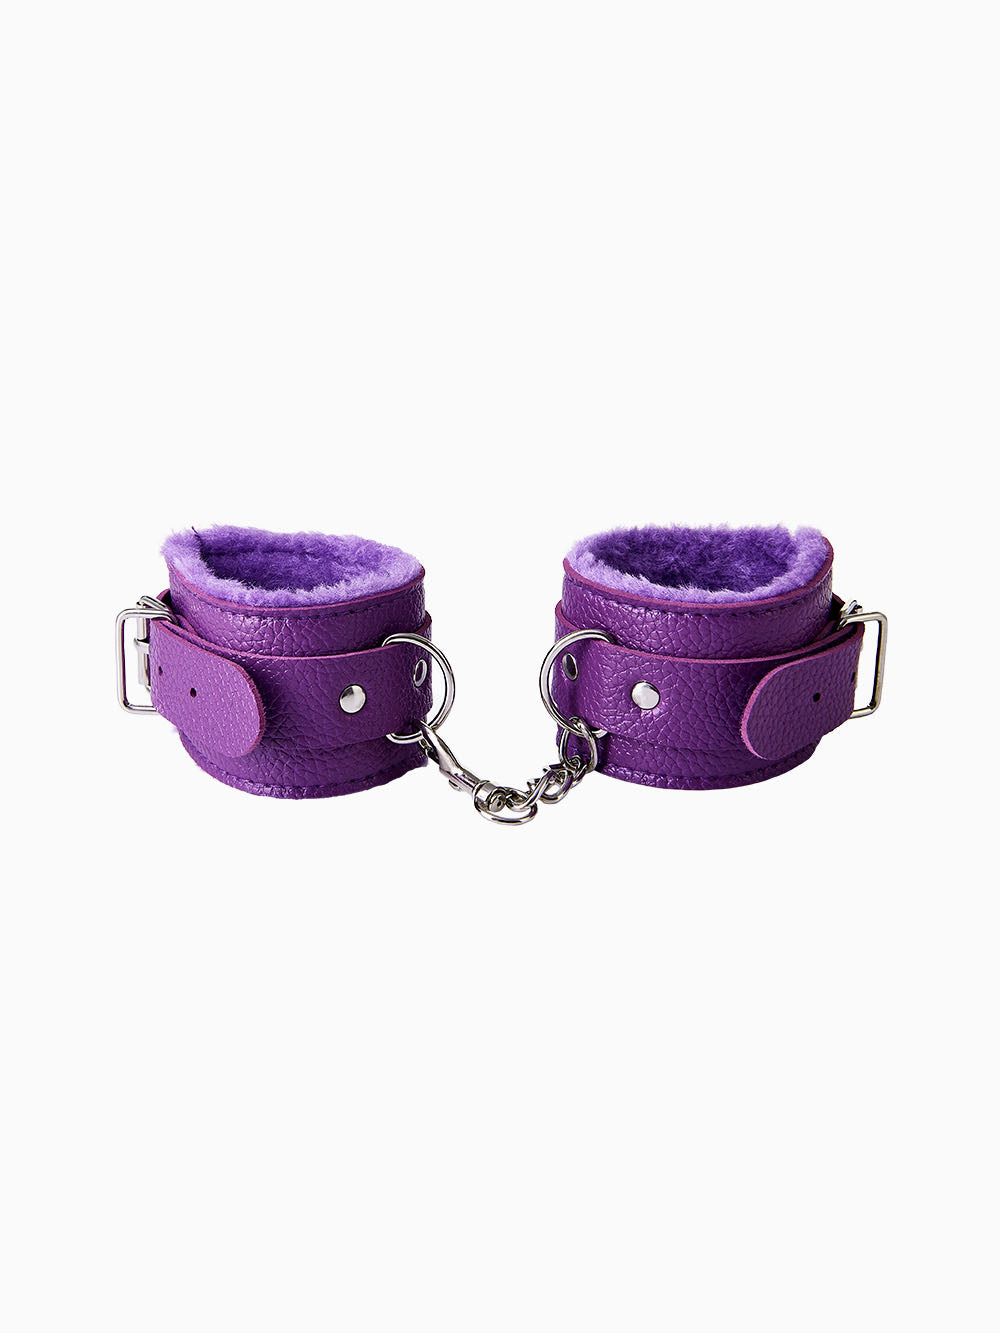 Pillow Talk Beginner Lined Handcuffs, Purple